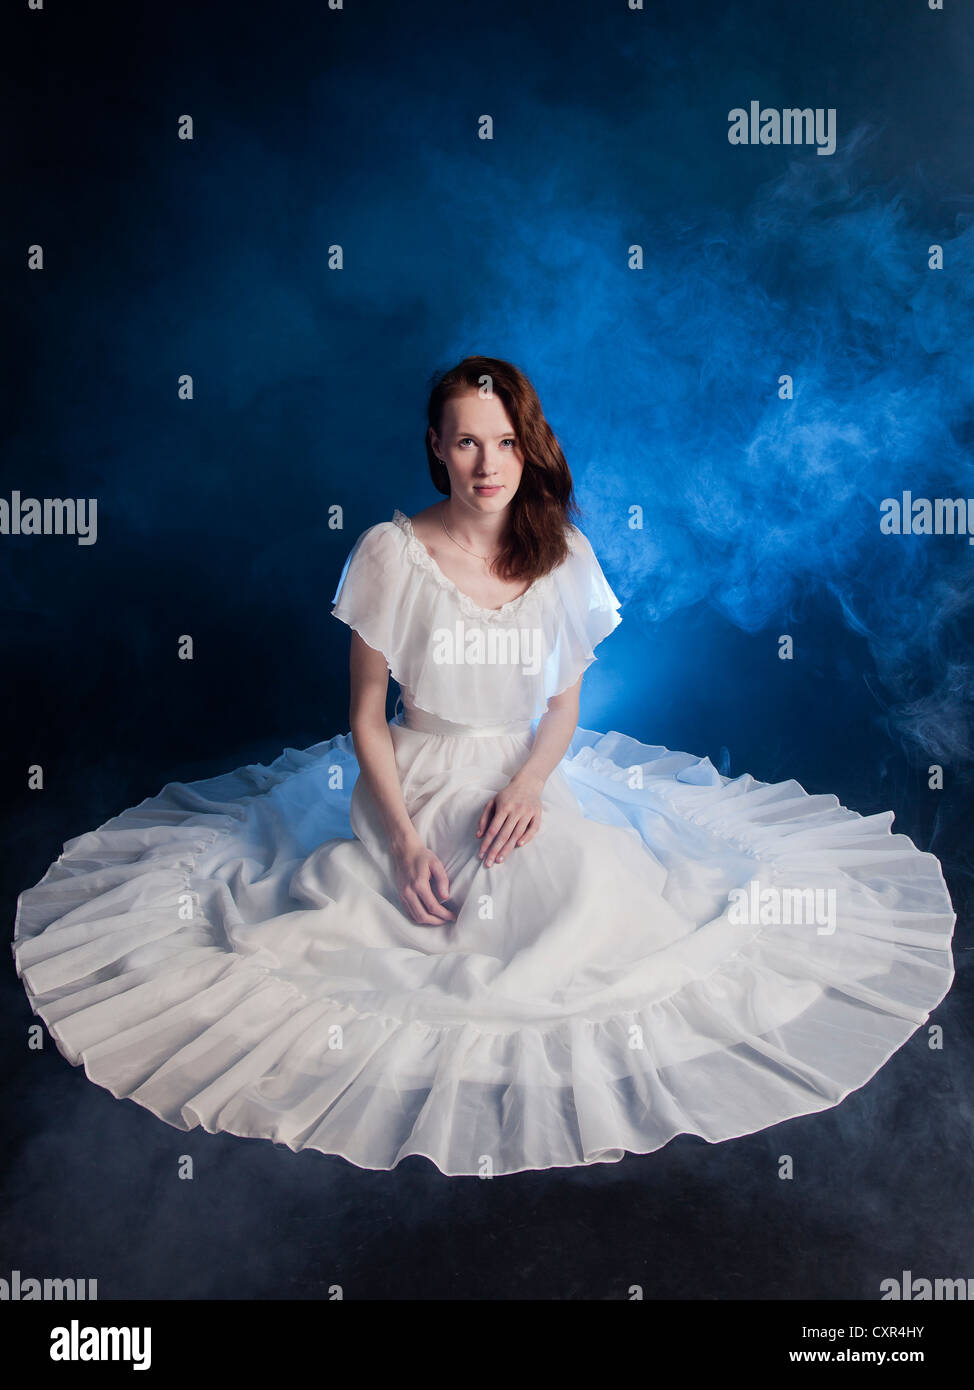 Una joven novia vestidos de traje de novia sentada en el suelo humo azul alrededor de ella Fotografía de stock Alamy